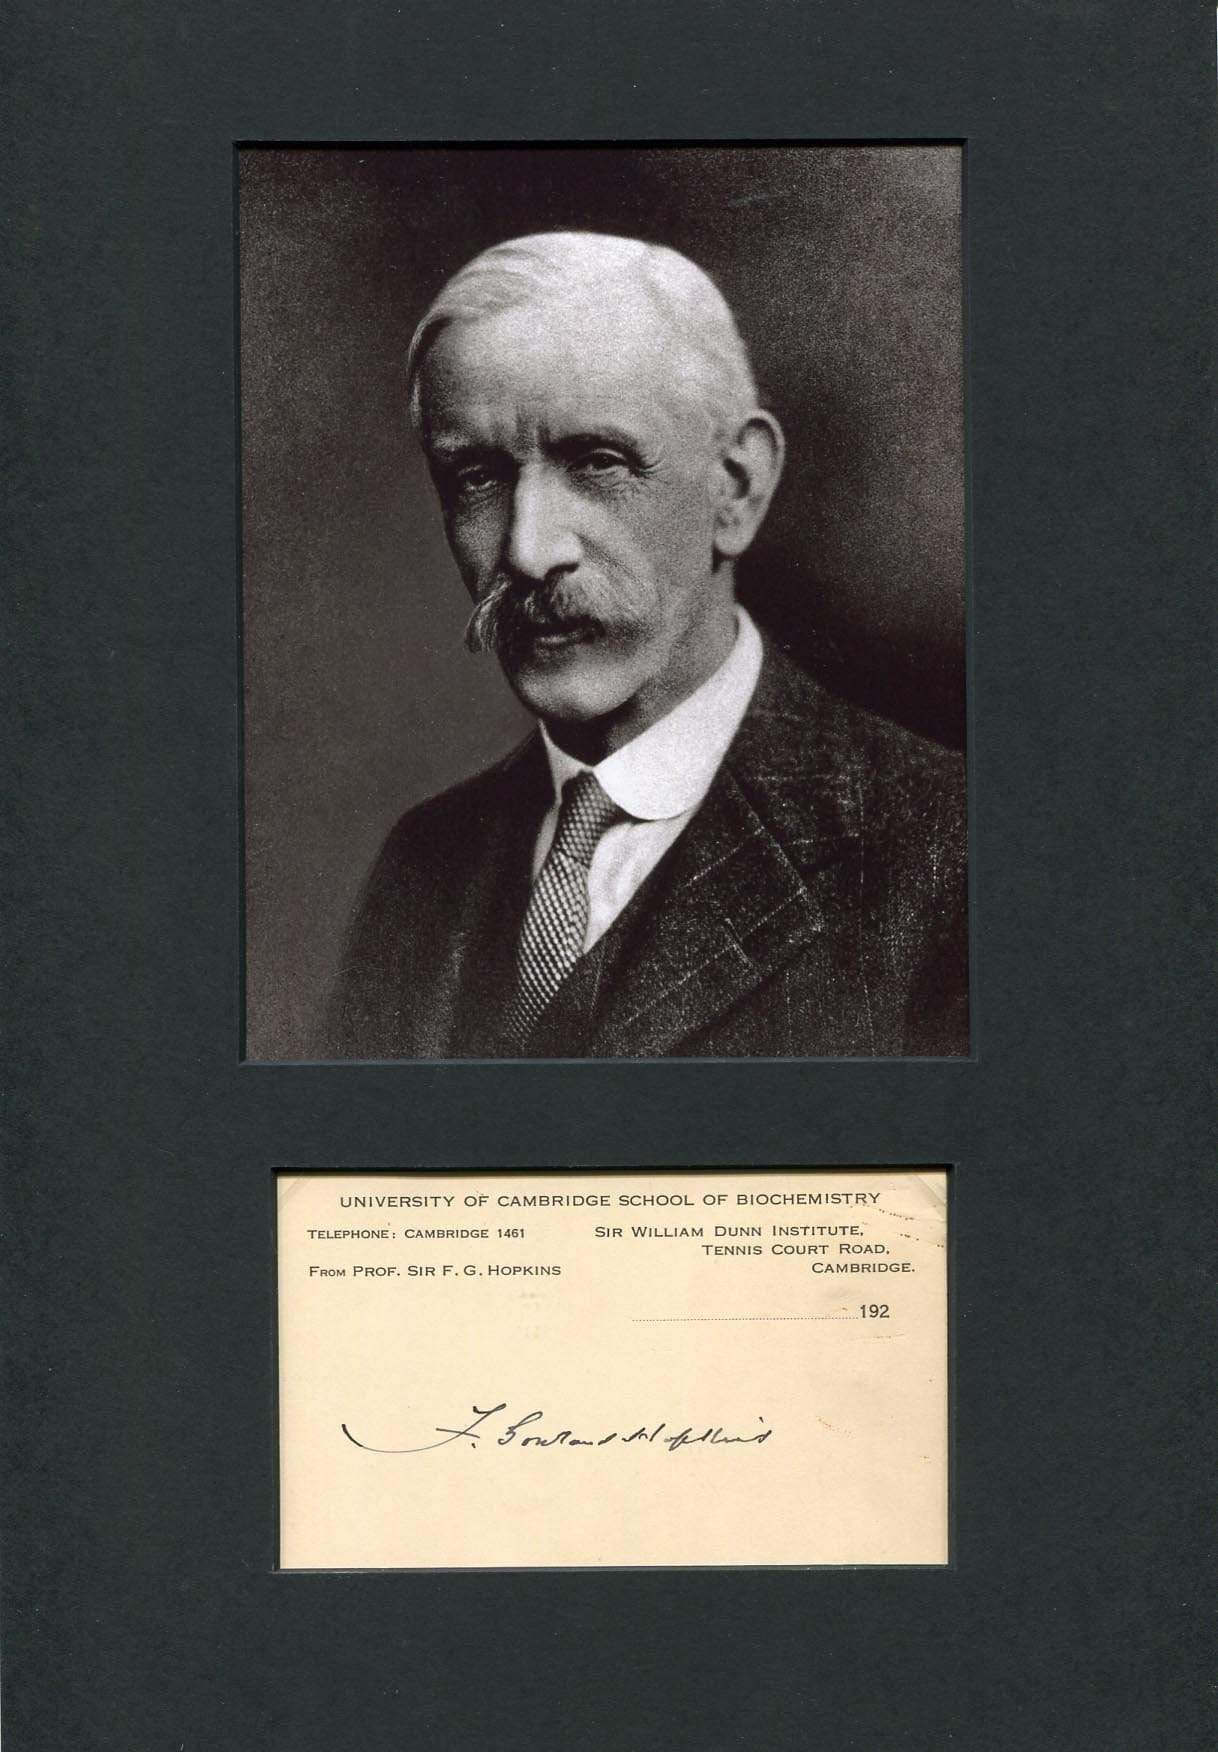 Hopkins, Frederick Gowland autograph